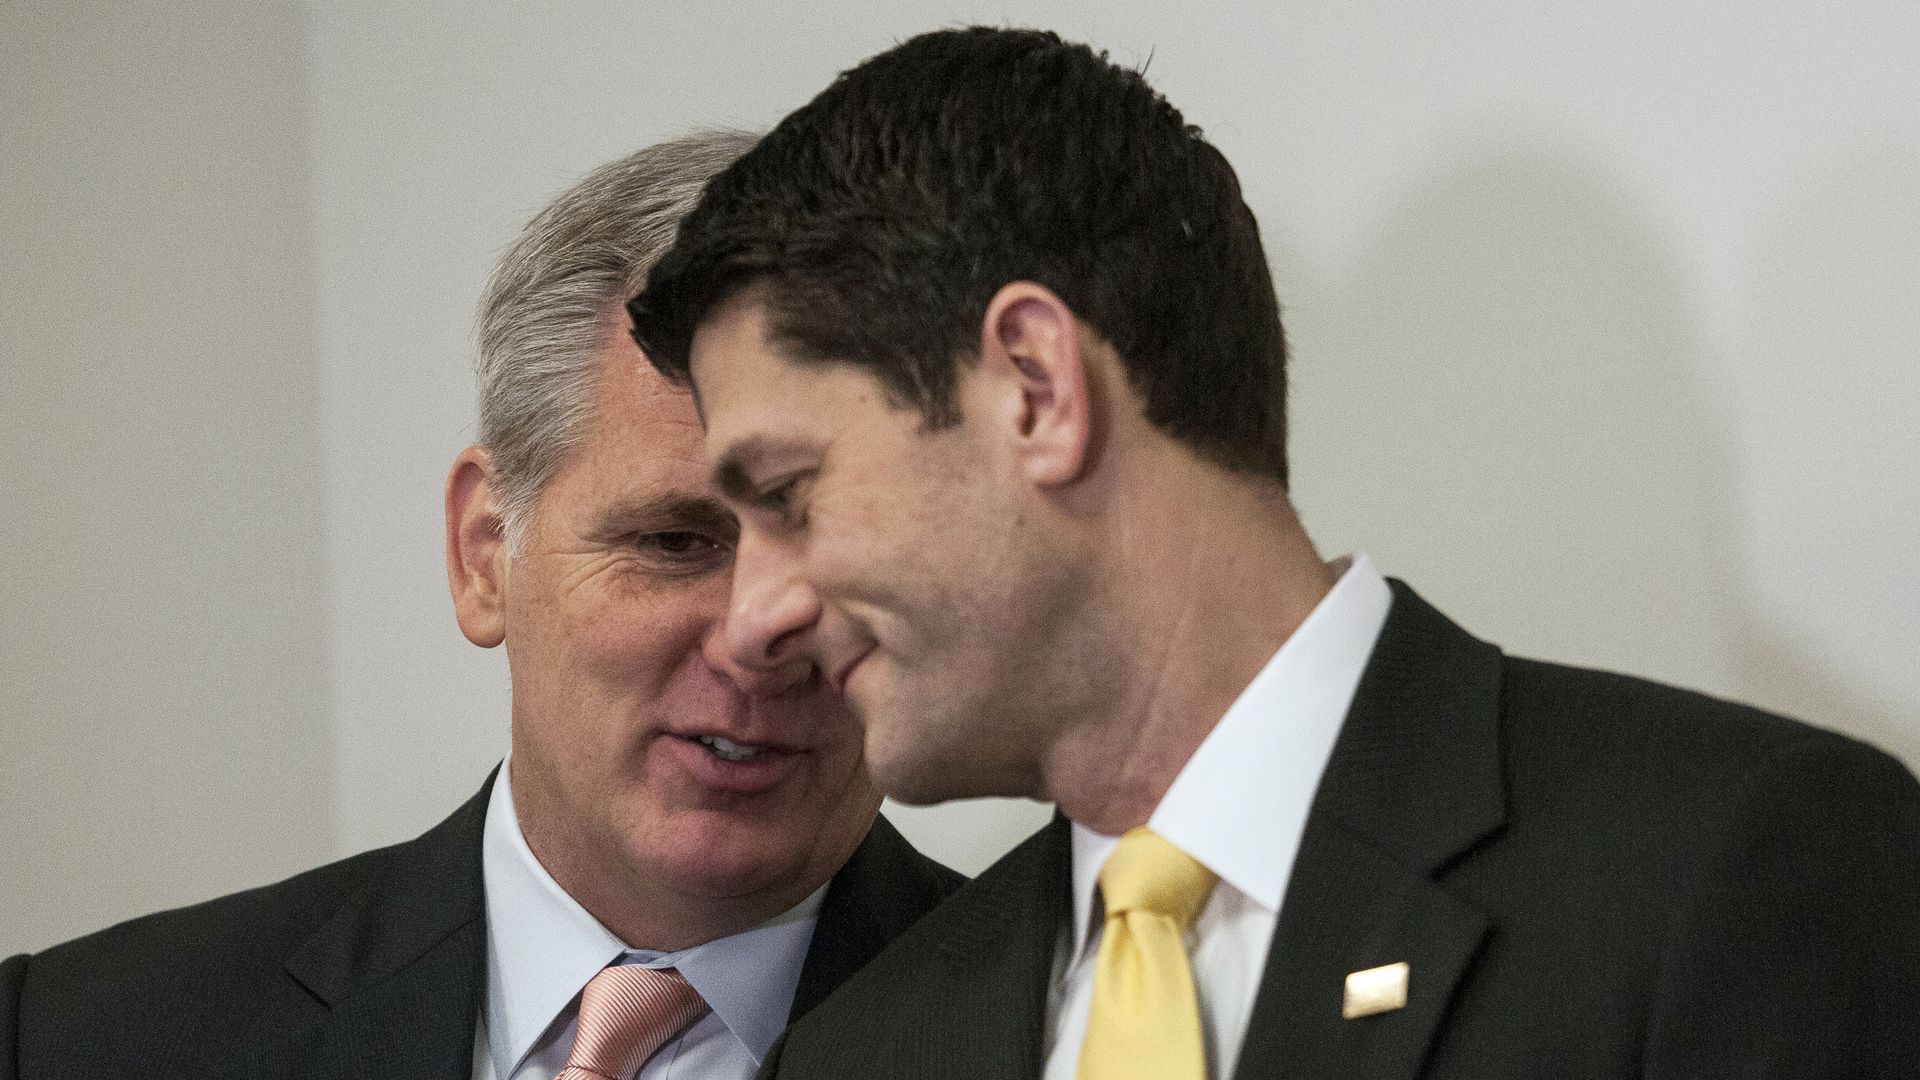 Paul Ryan leans over as Kevin McCarthy speaks in his ear.